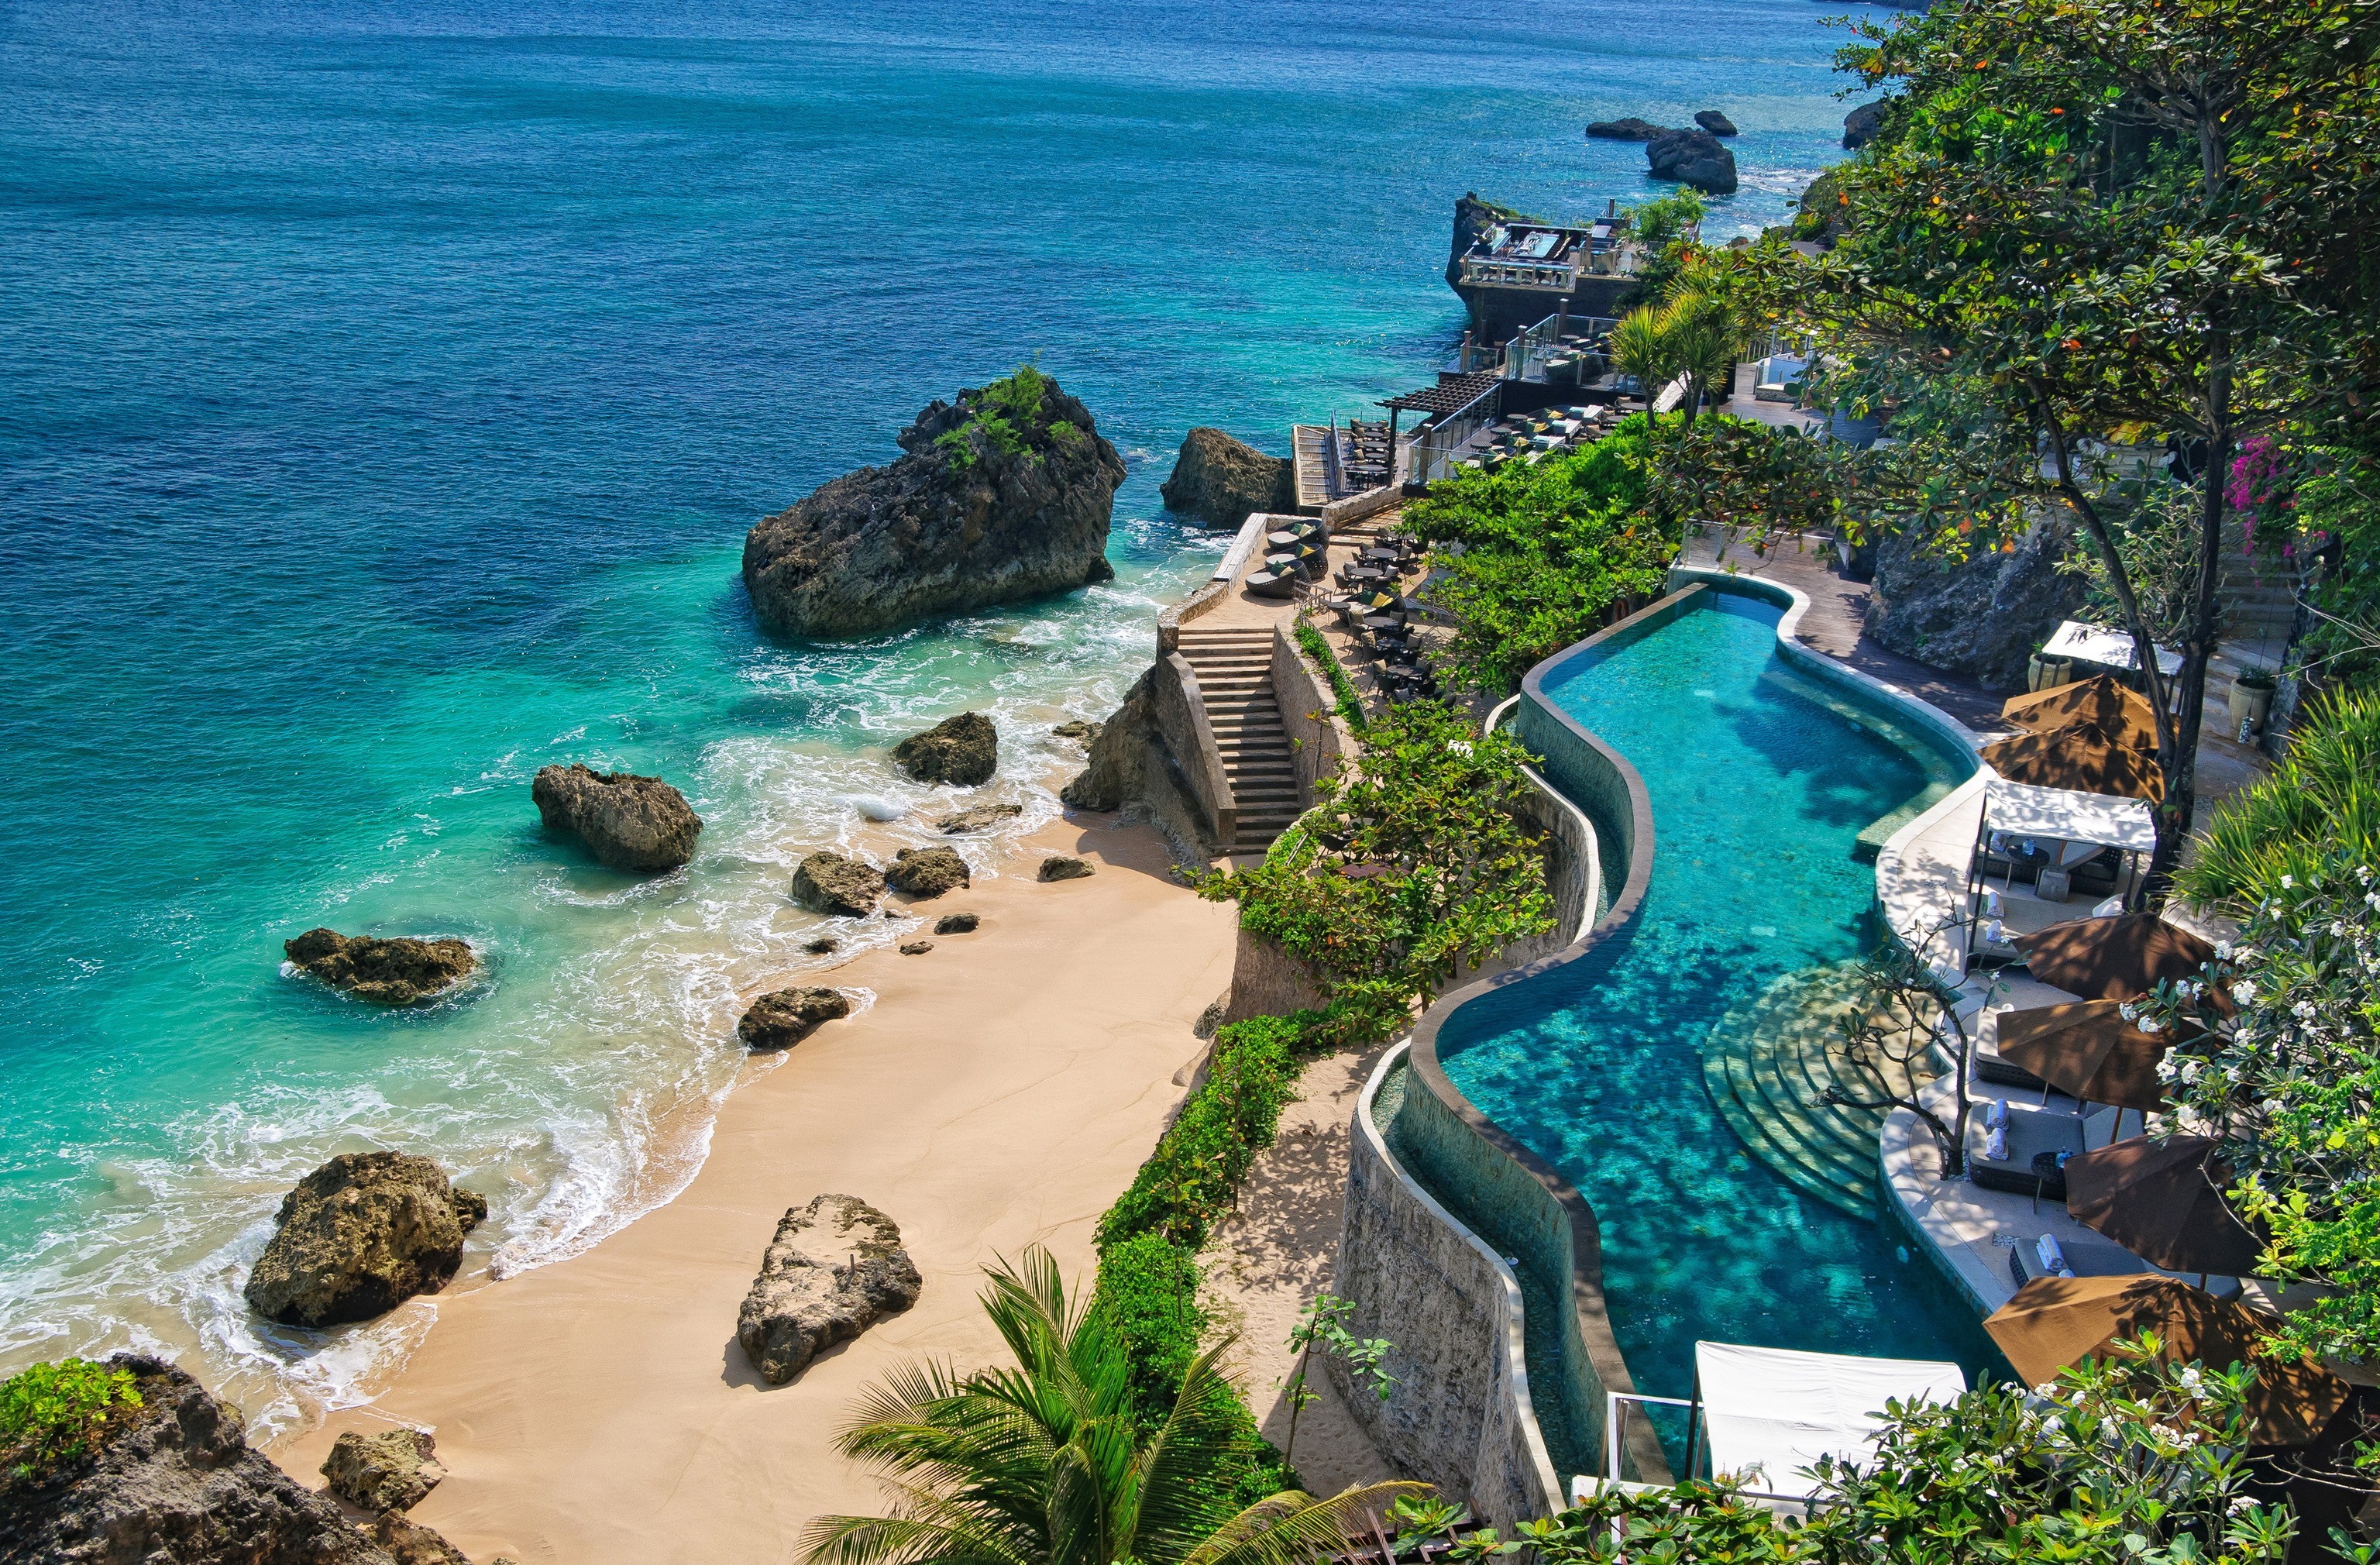 bali, beach, ocean, indonesia, resort, tropical, man made, pool Aesthetic wallpaper